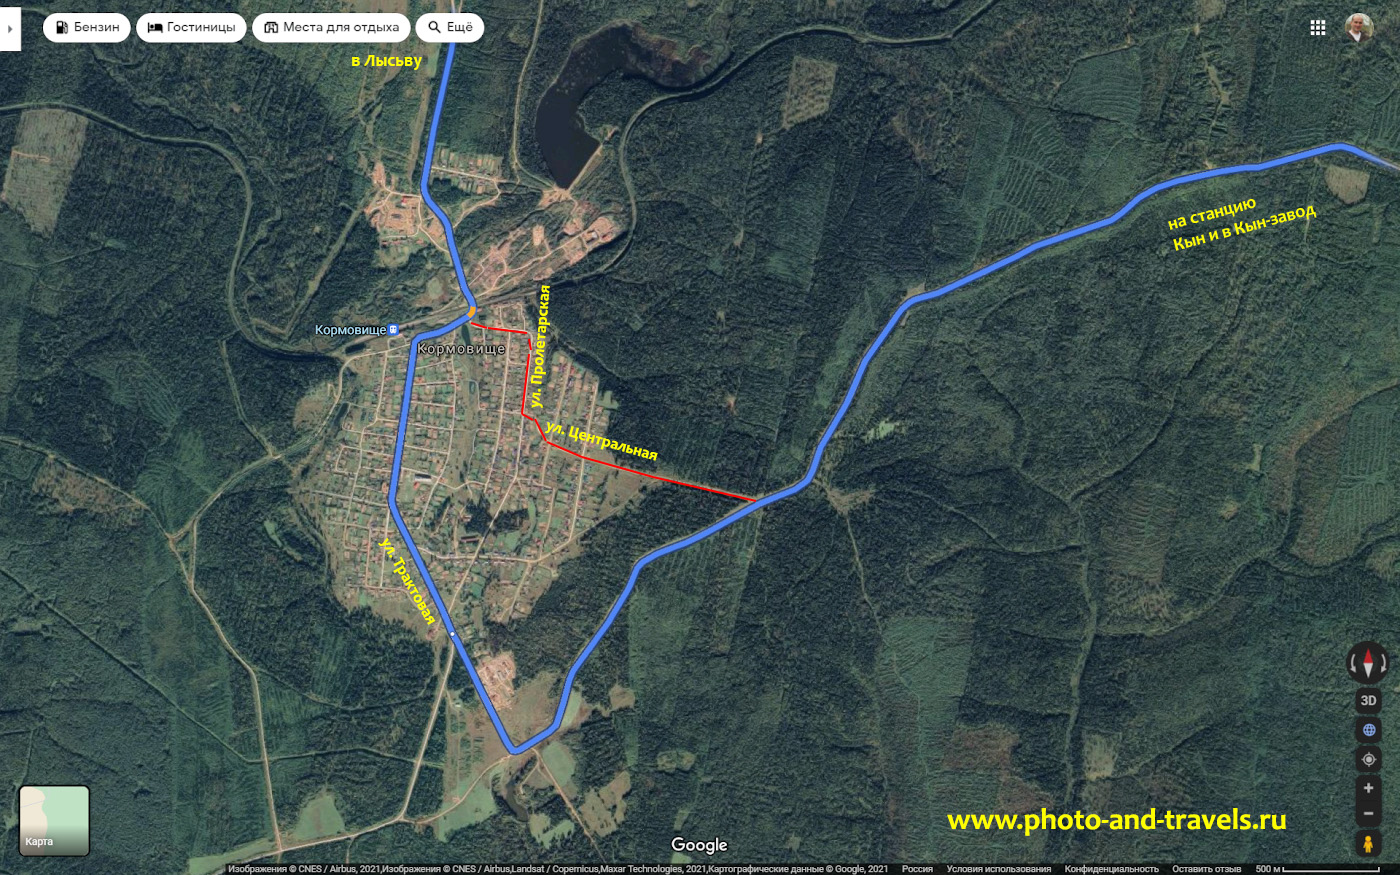 4. Карта легкого и сложного маршрута проезда по пути из Лысьвы в Кын через поселок Кормовище.